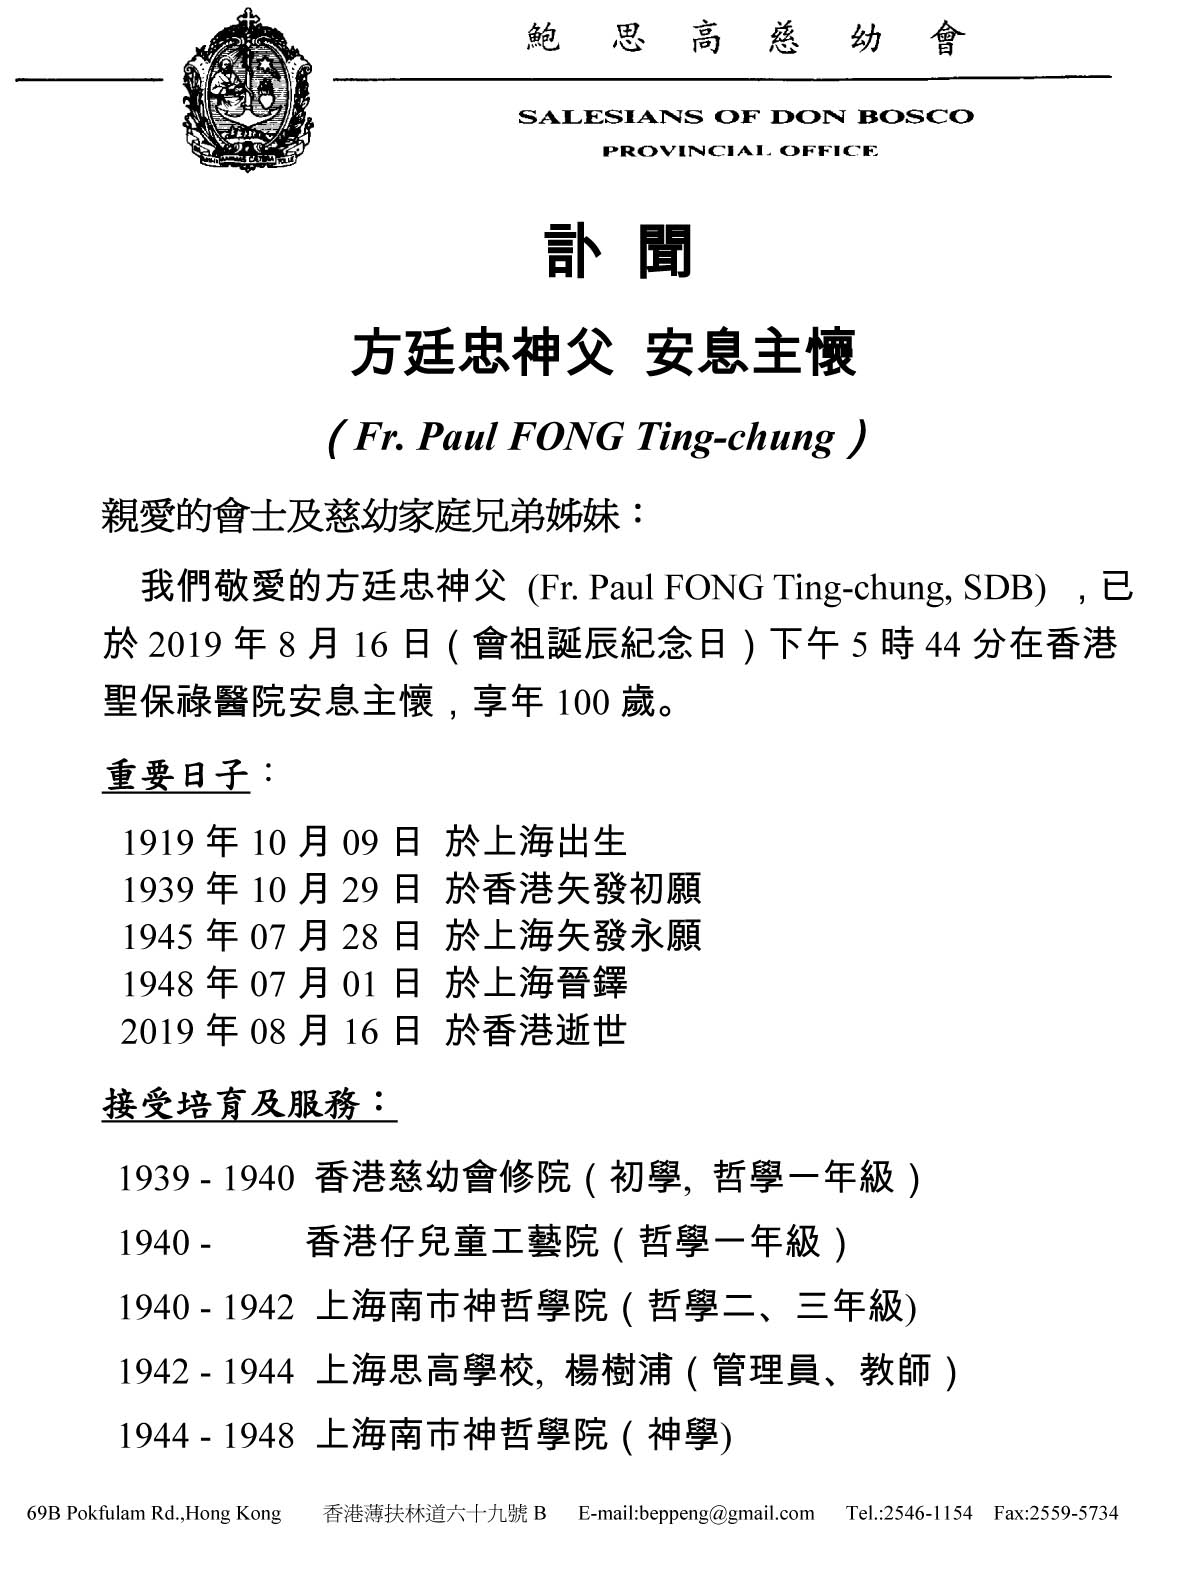 Fr Paul Fong Ting-chung FINAL-1